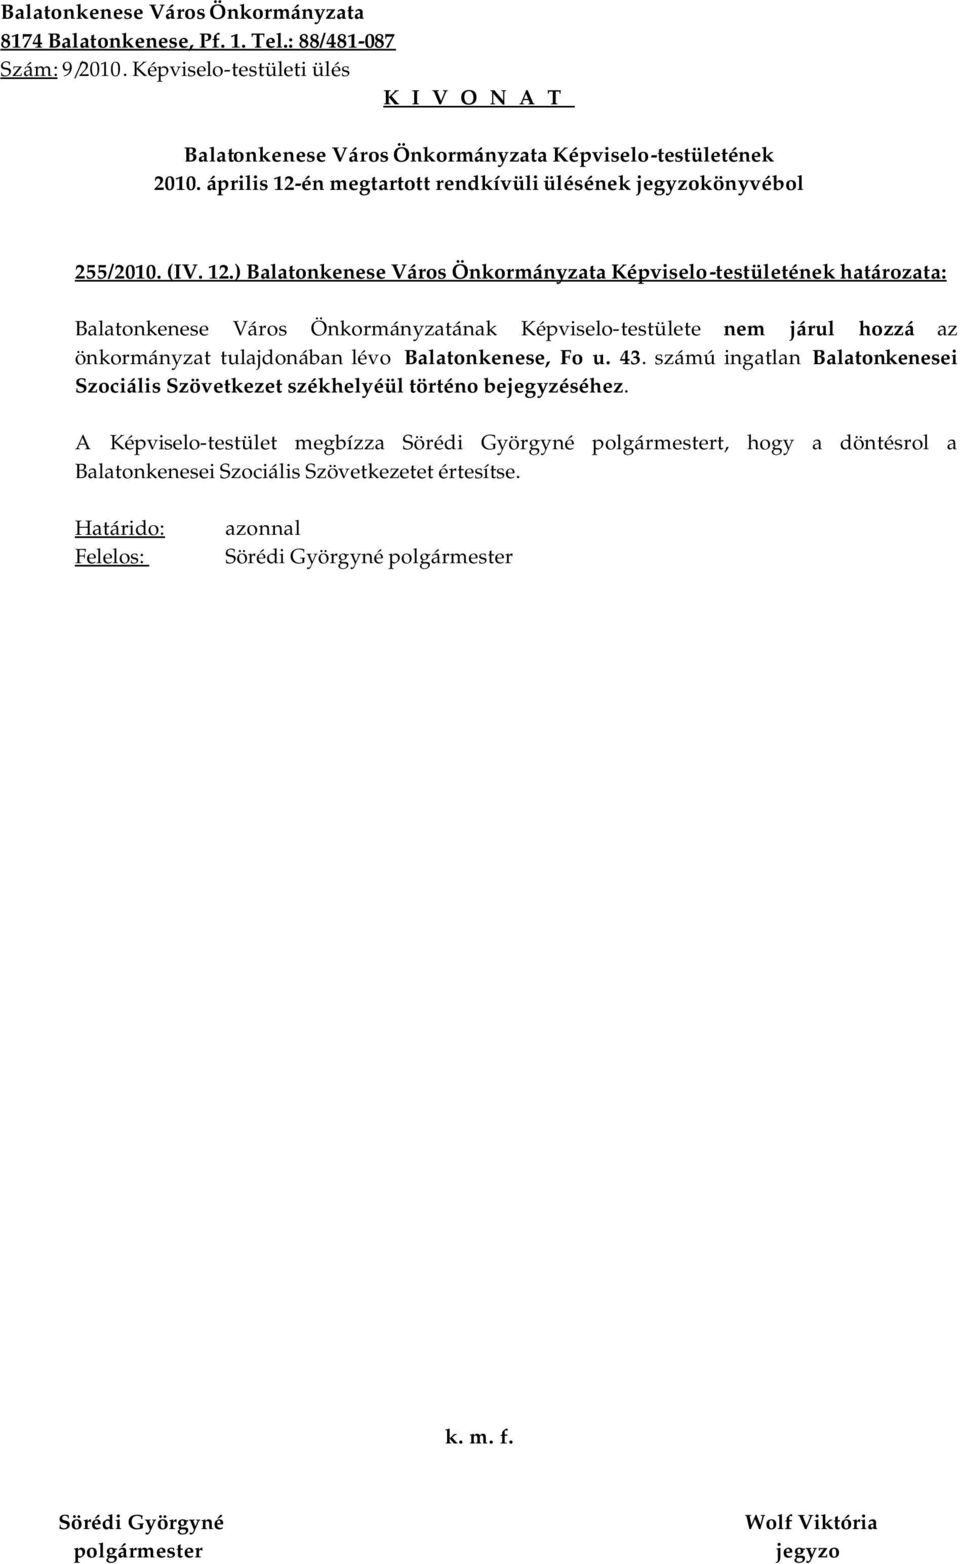 ) határozata: Balatonkenese Város Önkormányzatának Képviselo-testülete nem járul hozzá az önkormányzat